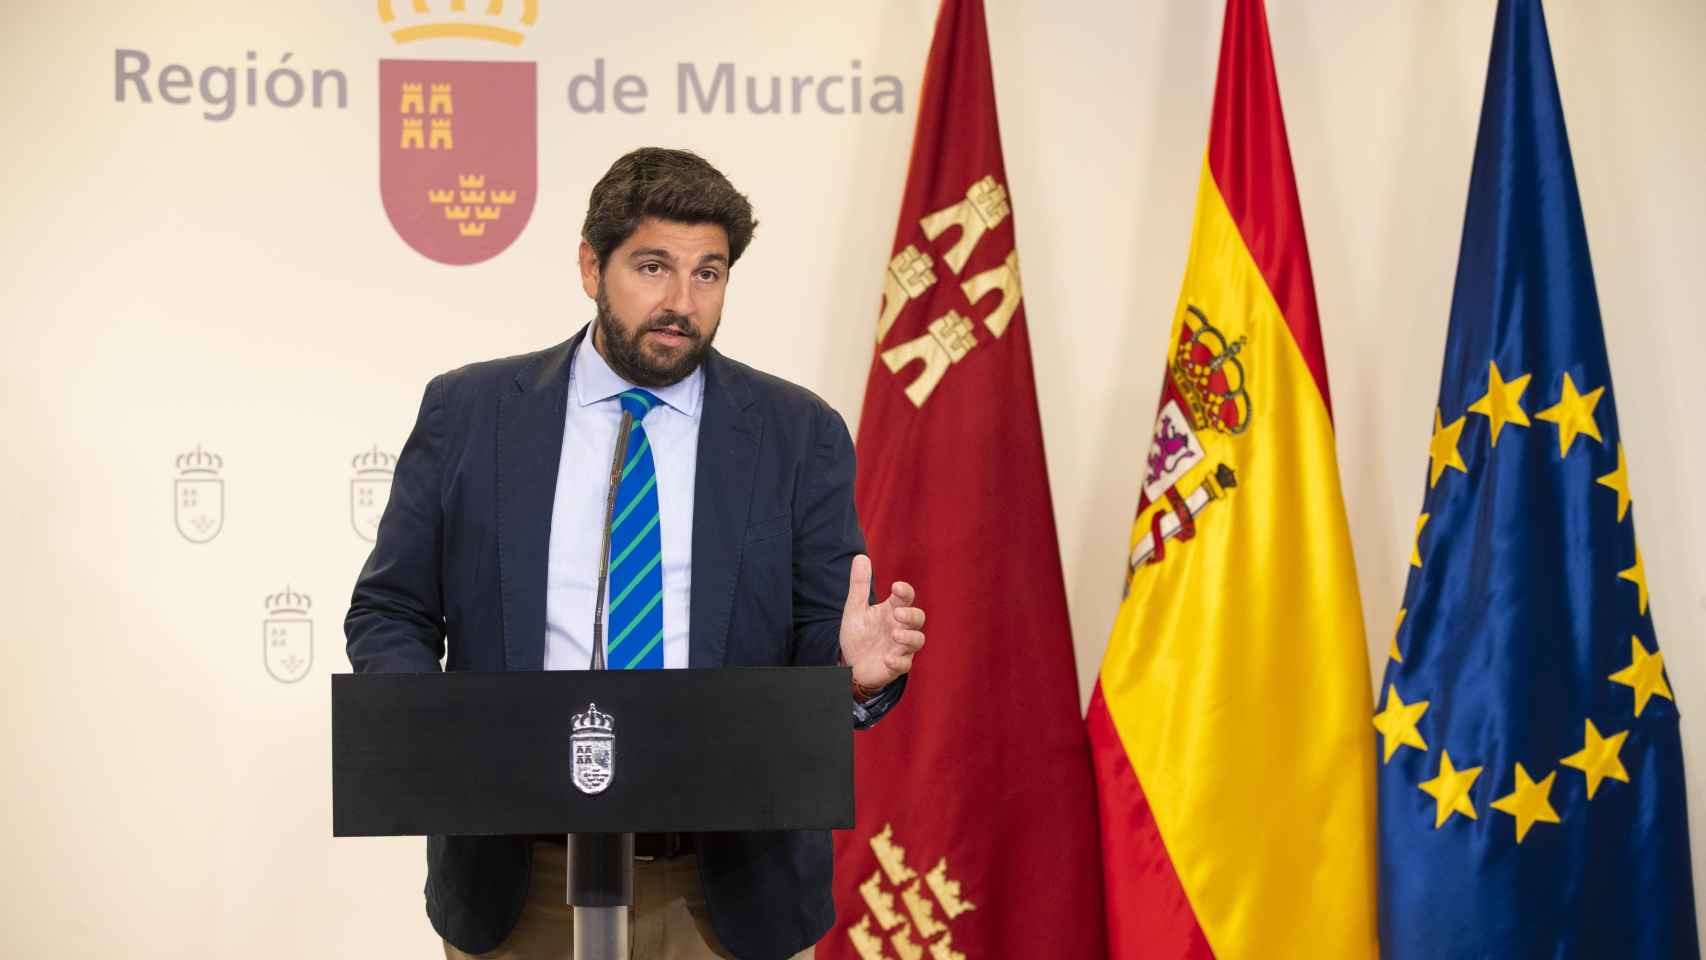 Fernando López Miras, el presidente del Gobierno de la Región de Murcia en funciones.